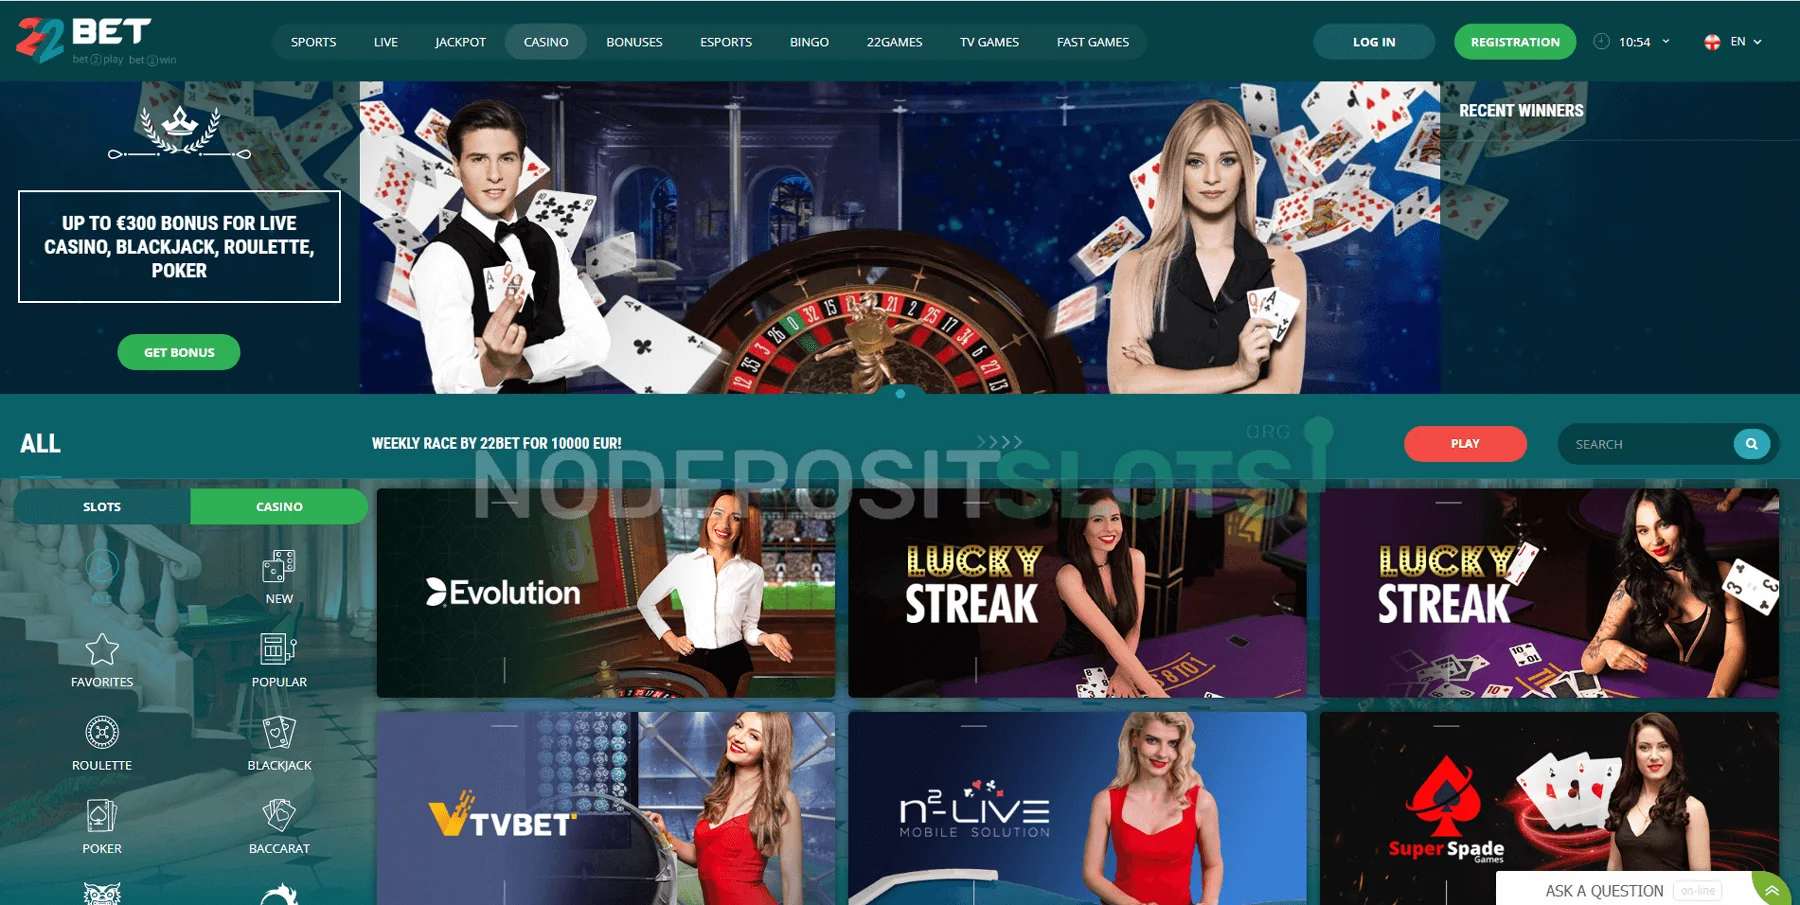 Aproveite jogos de casino online seguros e confiáveis no 22bet